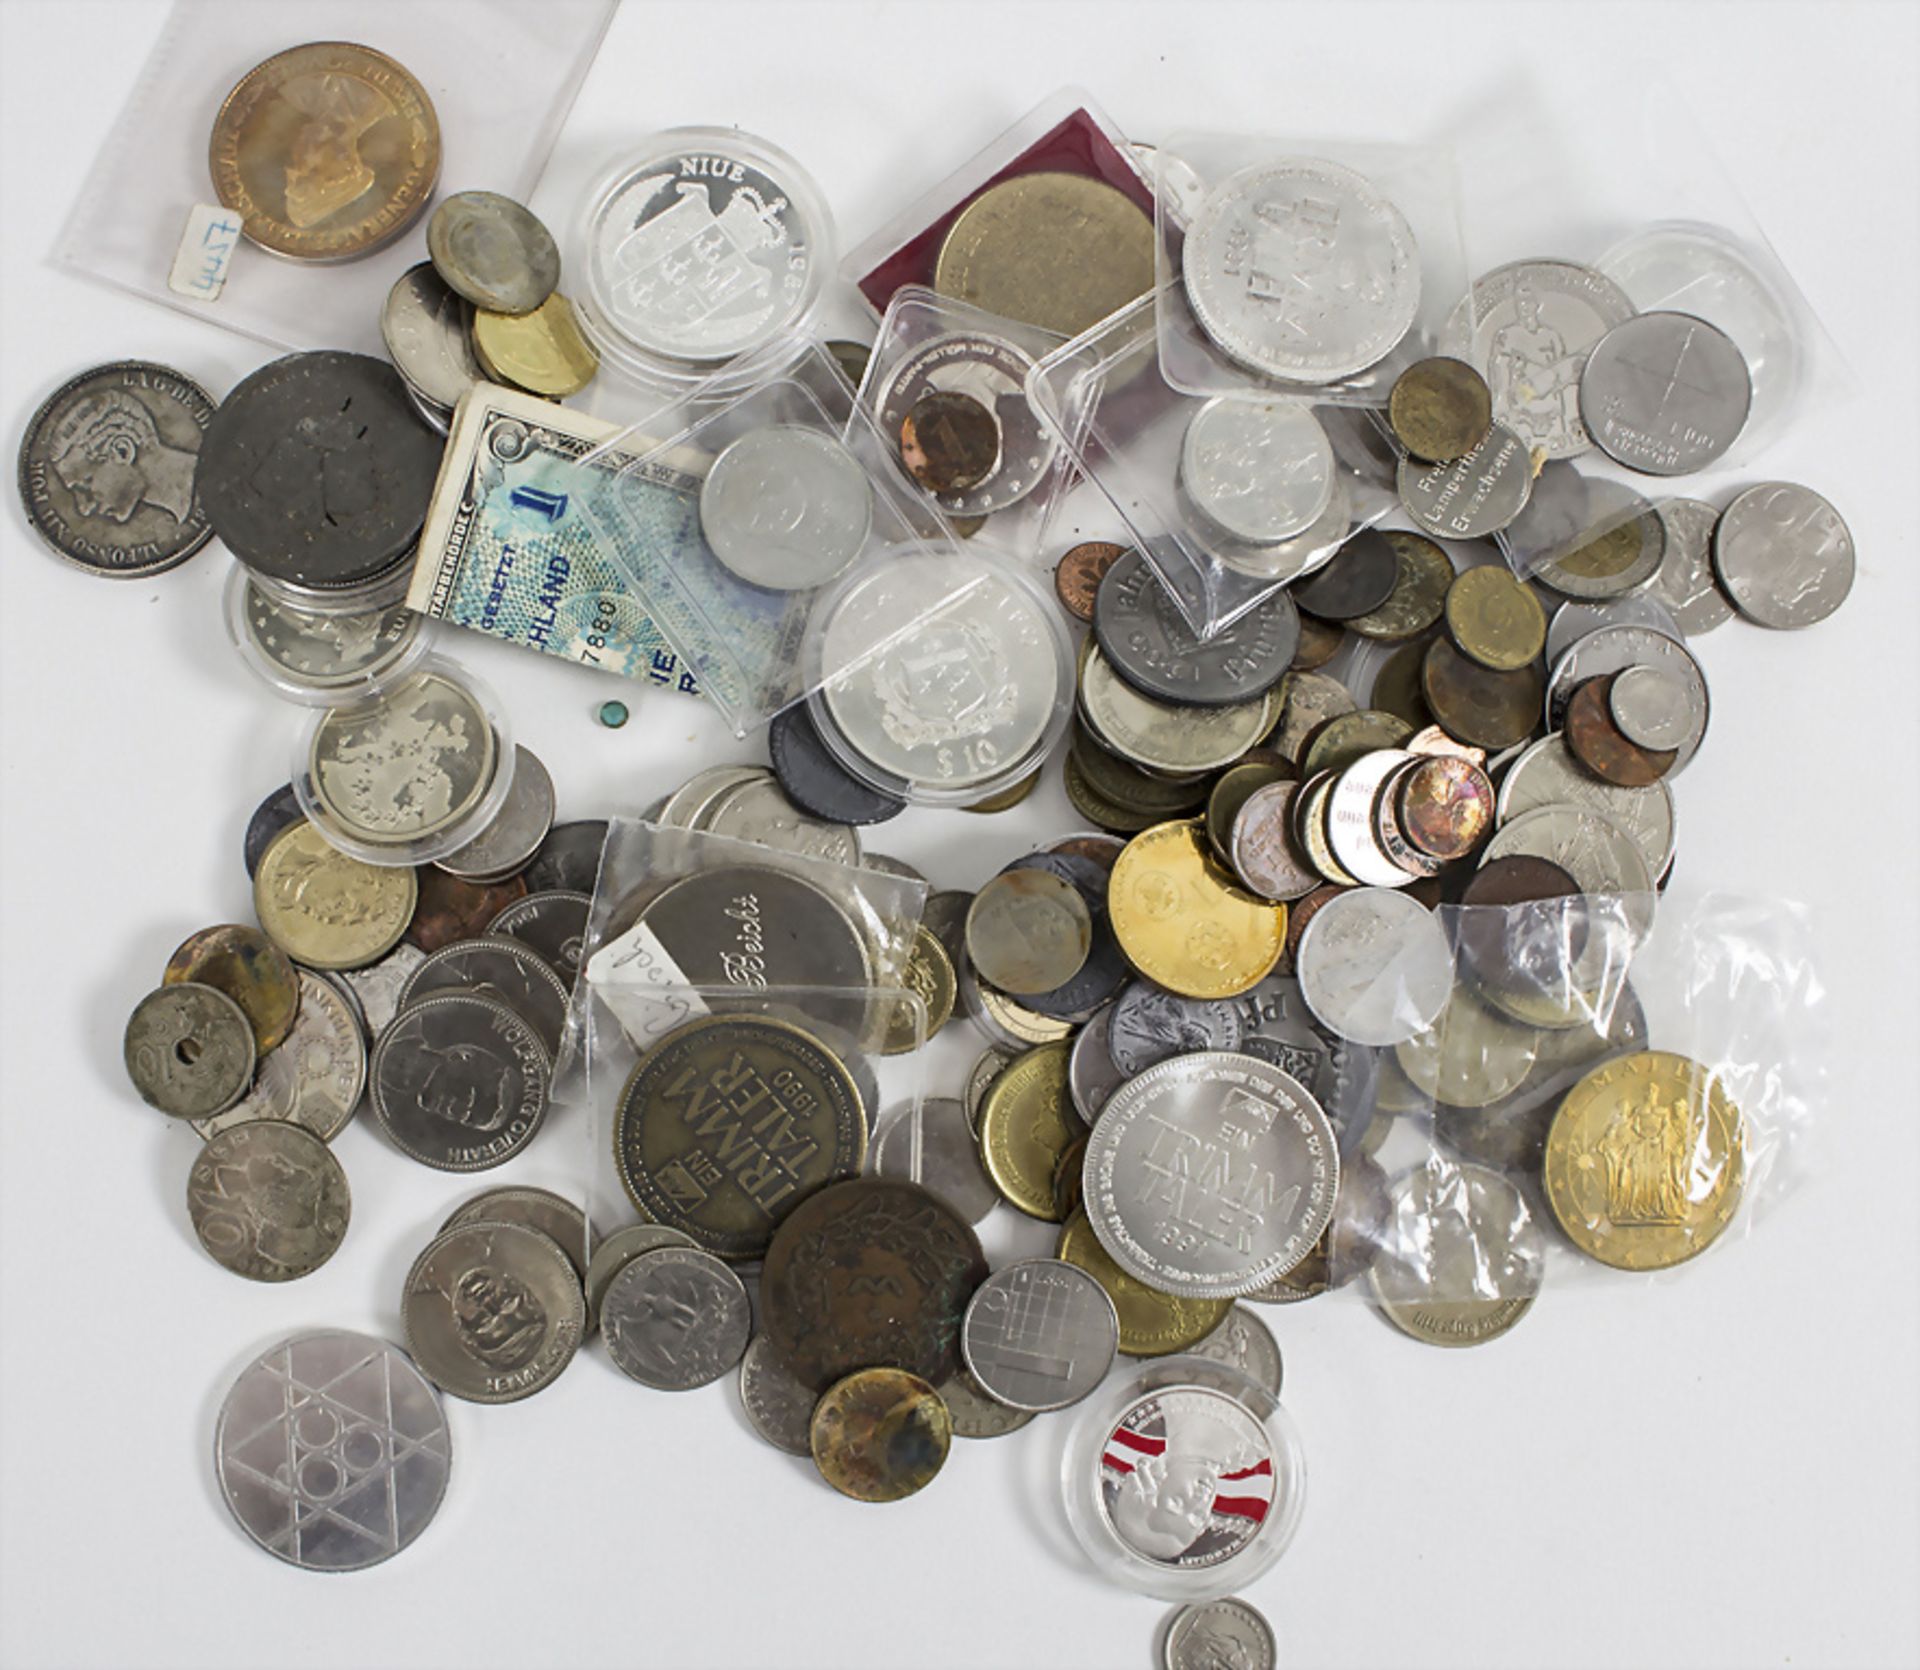 Sammlung Münzen und Medaillen / A collection of coins and medals